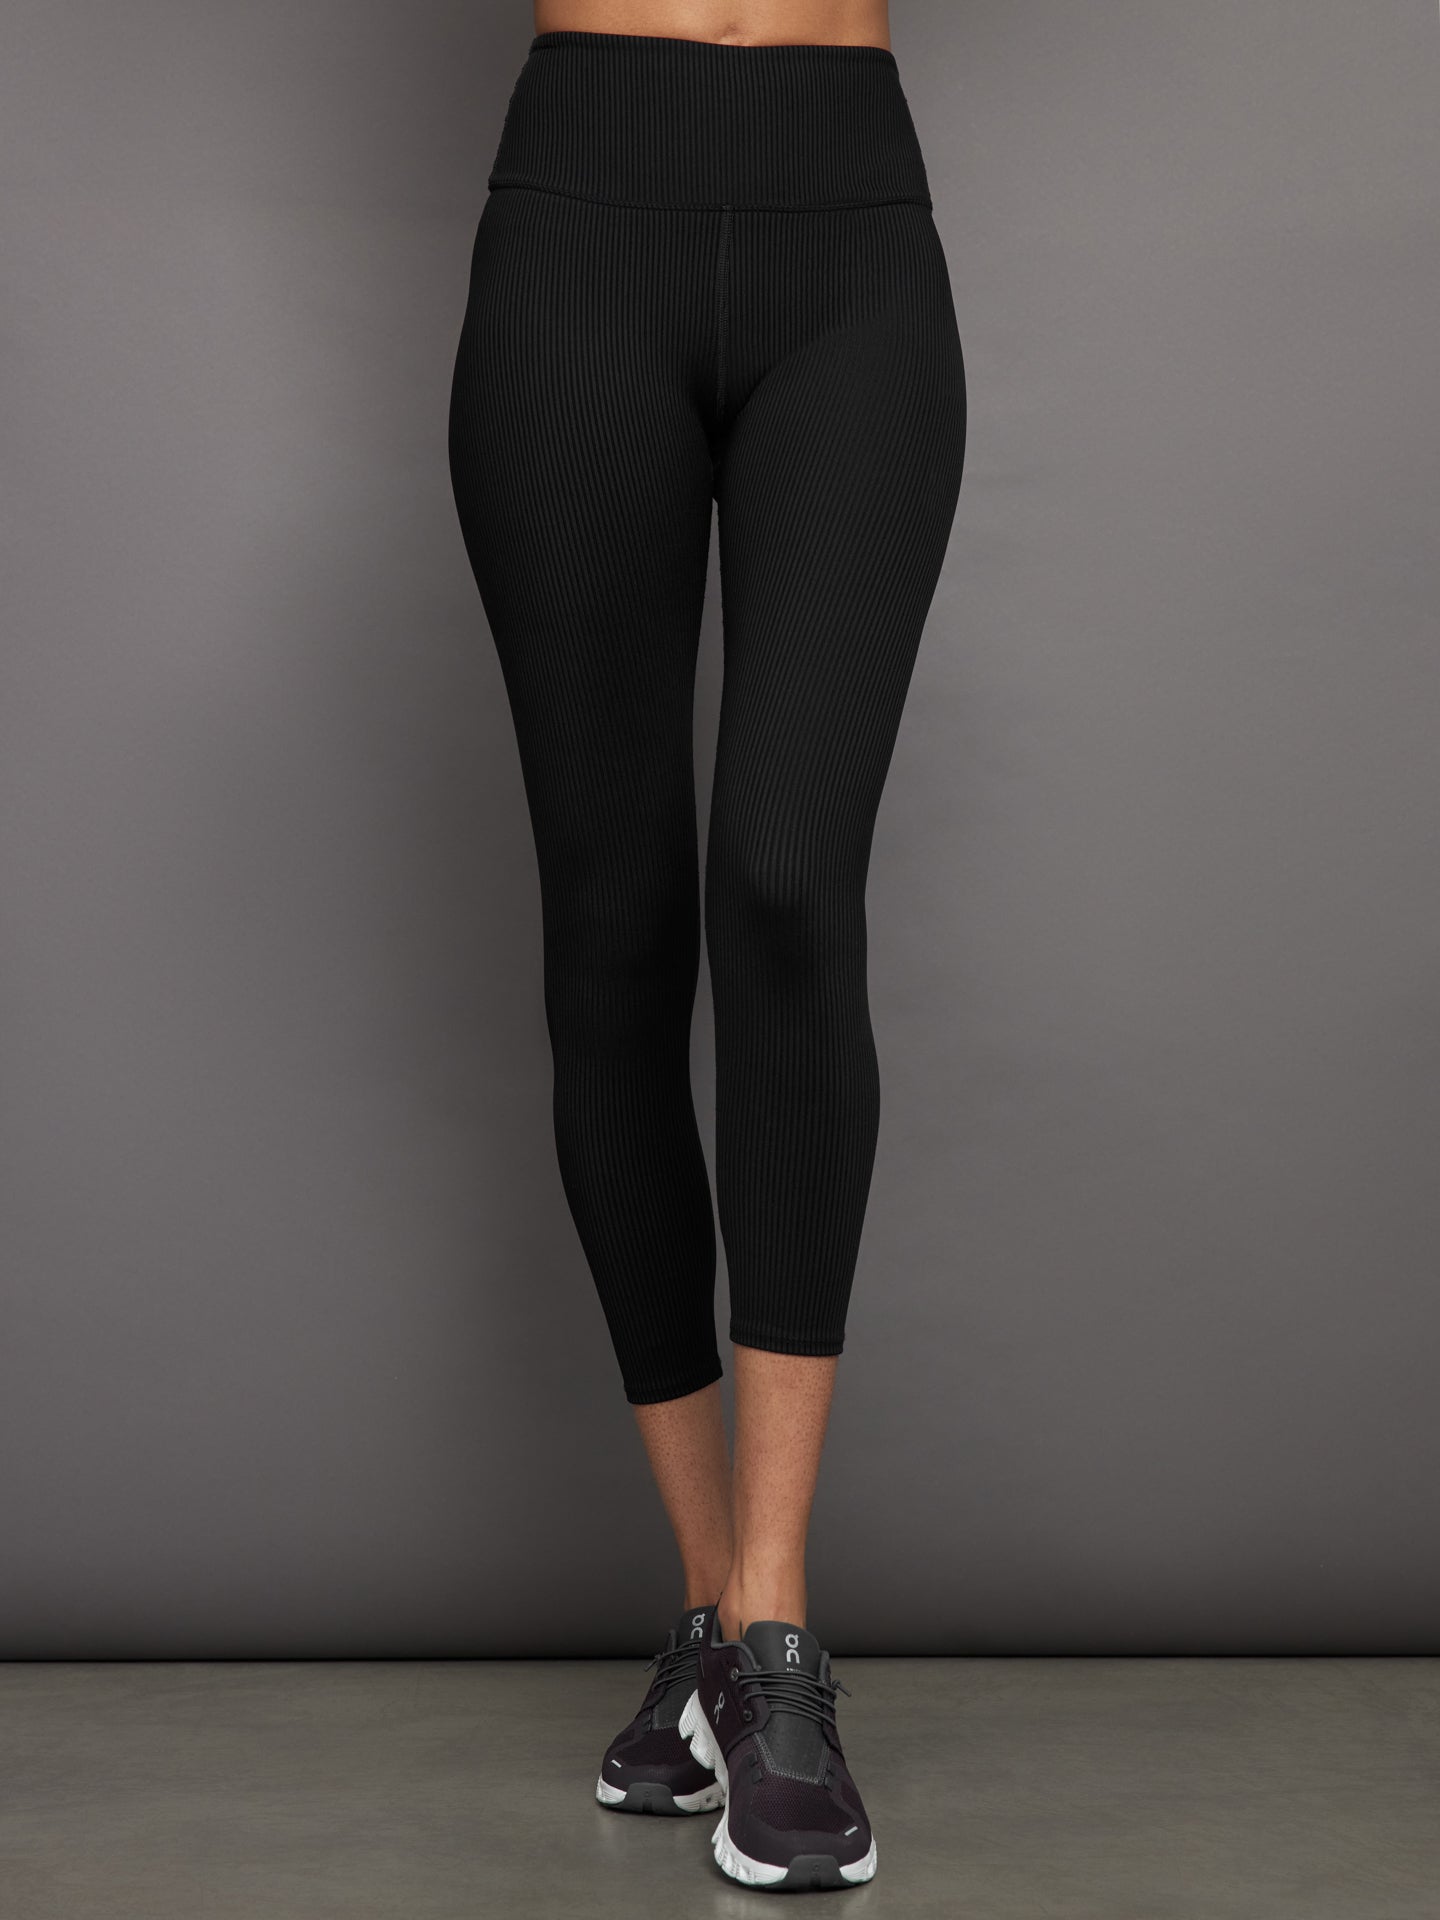 Lululemon Black Leggings - Mesh Side Detailing  Lululemon black leggings, Black  leggings, Clothes design